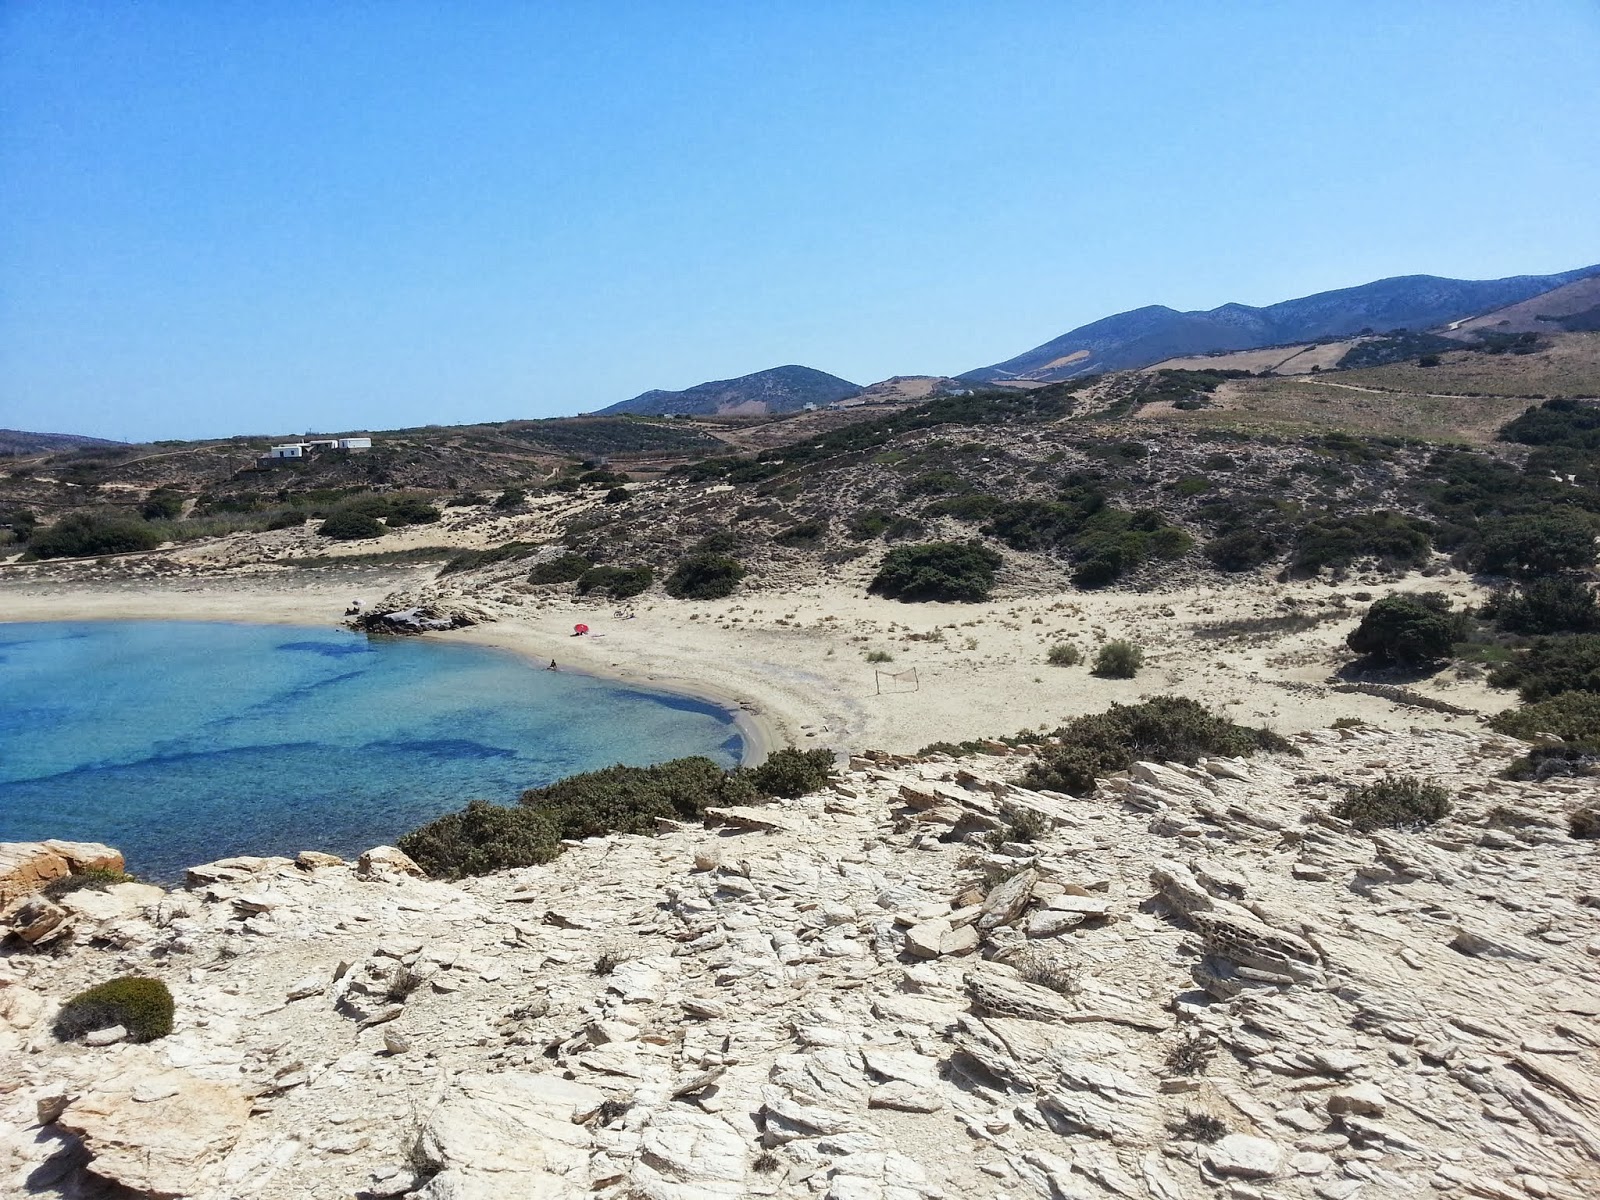 Livadia beach'in fotoğrafı kahverengi kum yüzey ile